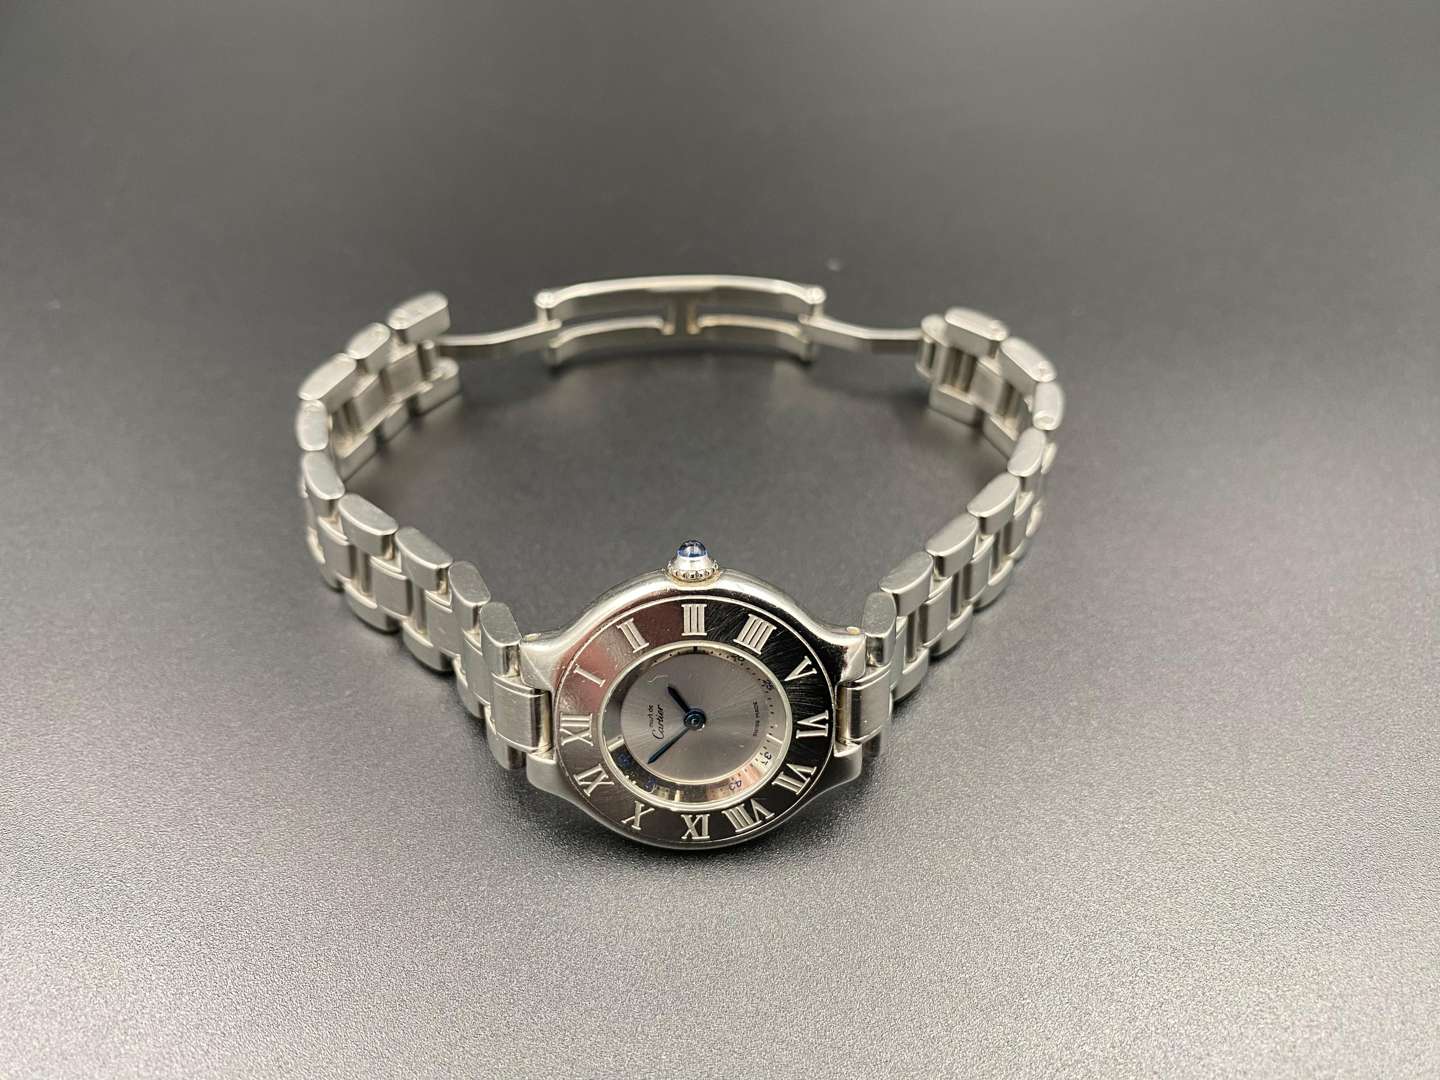 <p>MUST DE CARTIER, “21”, 1340, a ladies stainless steel, quartz wristwatch.</p>